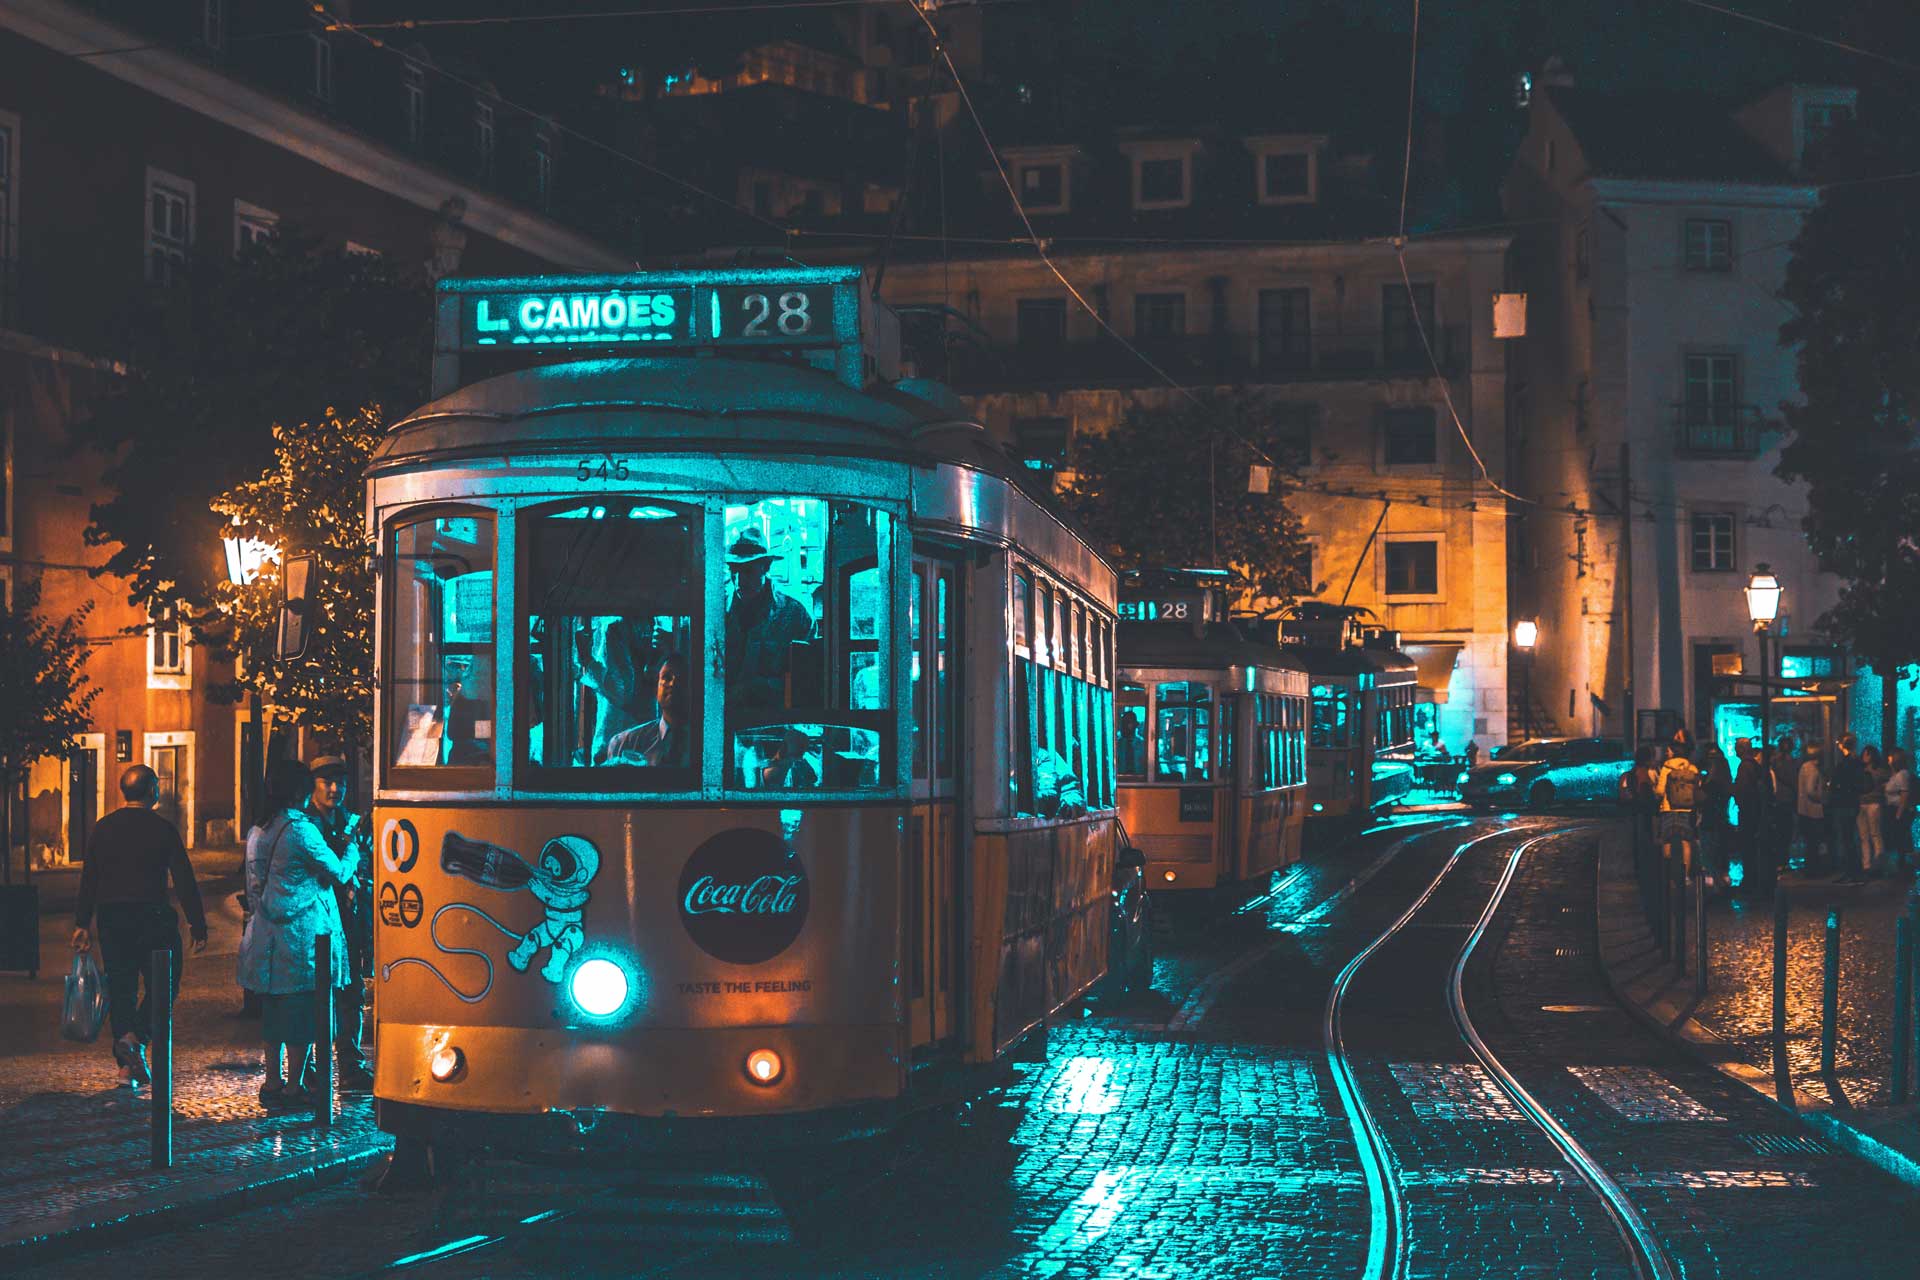 bezienswaardigheid tramlijn 28 Lissabon